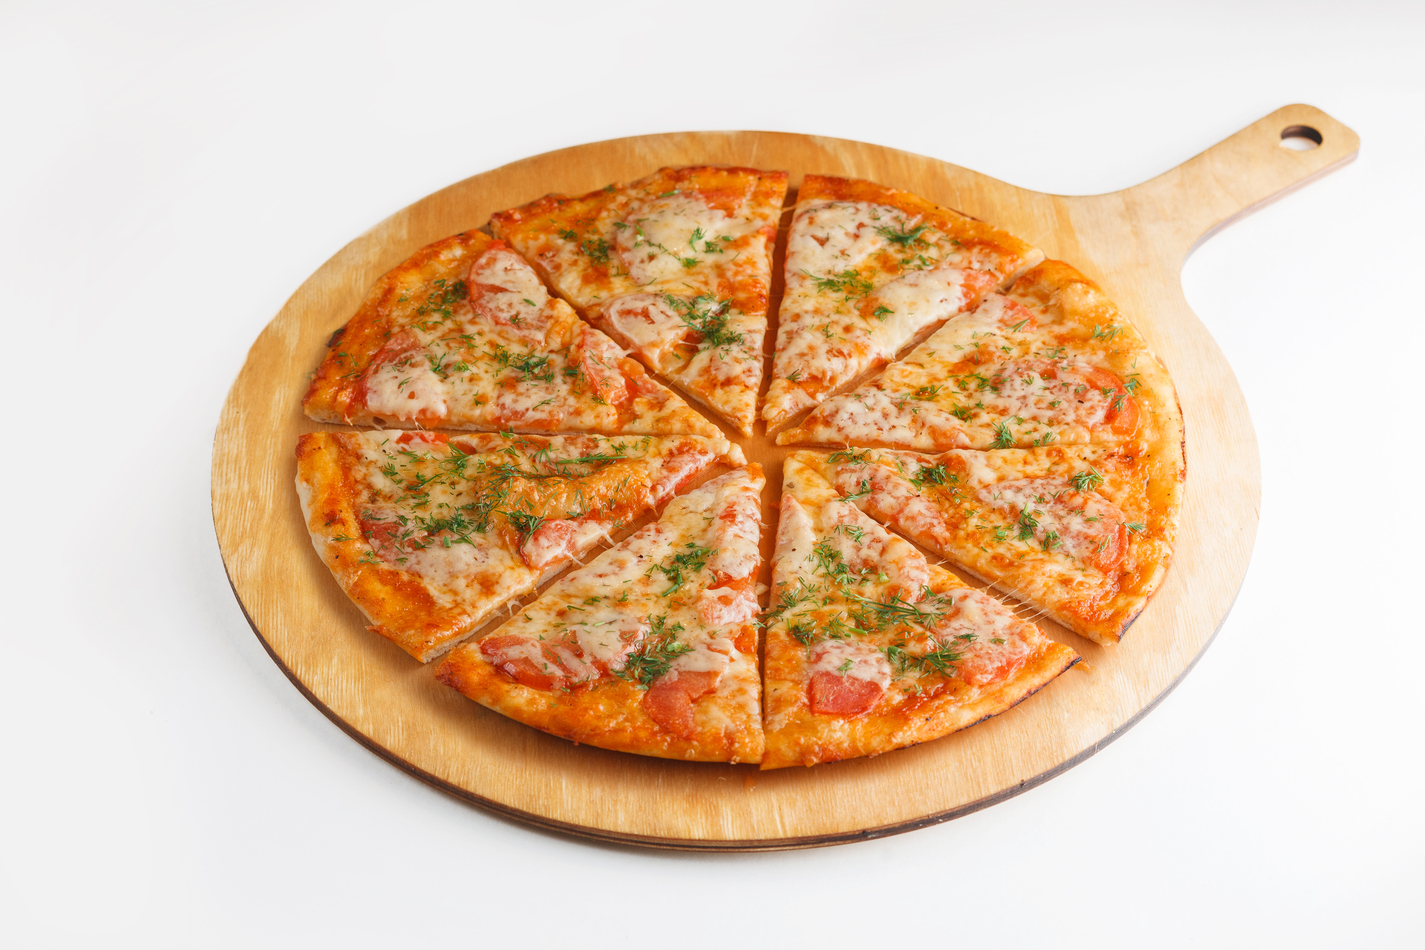 технологическая карта пиццы маргарита 30 см фото 106